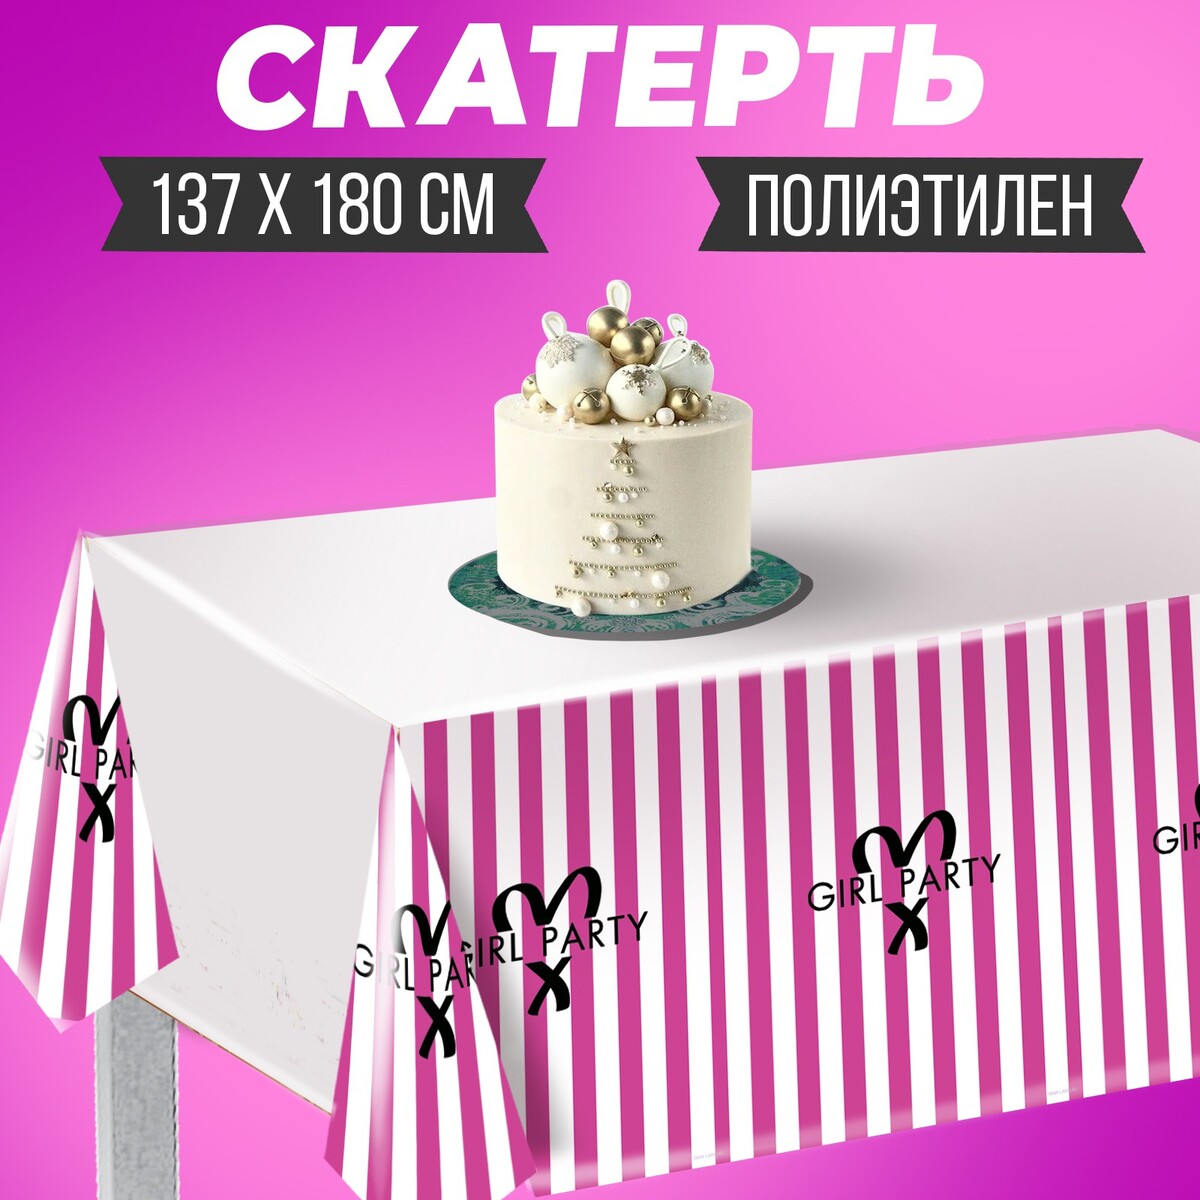 Скатерть girl party, 137 × 180 см, полиэтилен хлопушка пневматическая boy or girl 30 см розовая ной дым